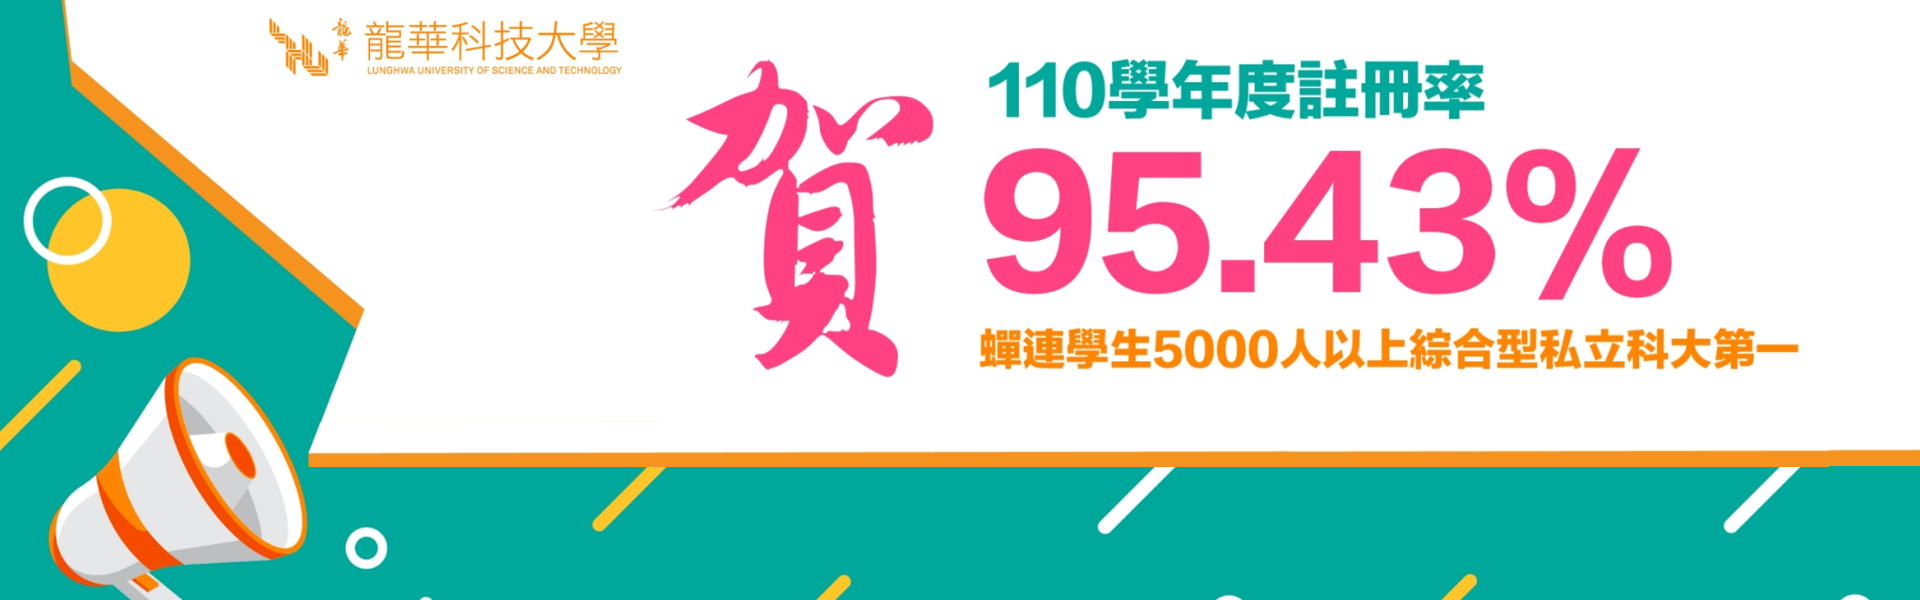 賀~110學年度註冊率95.43%